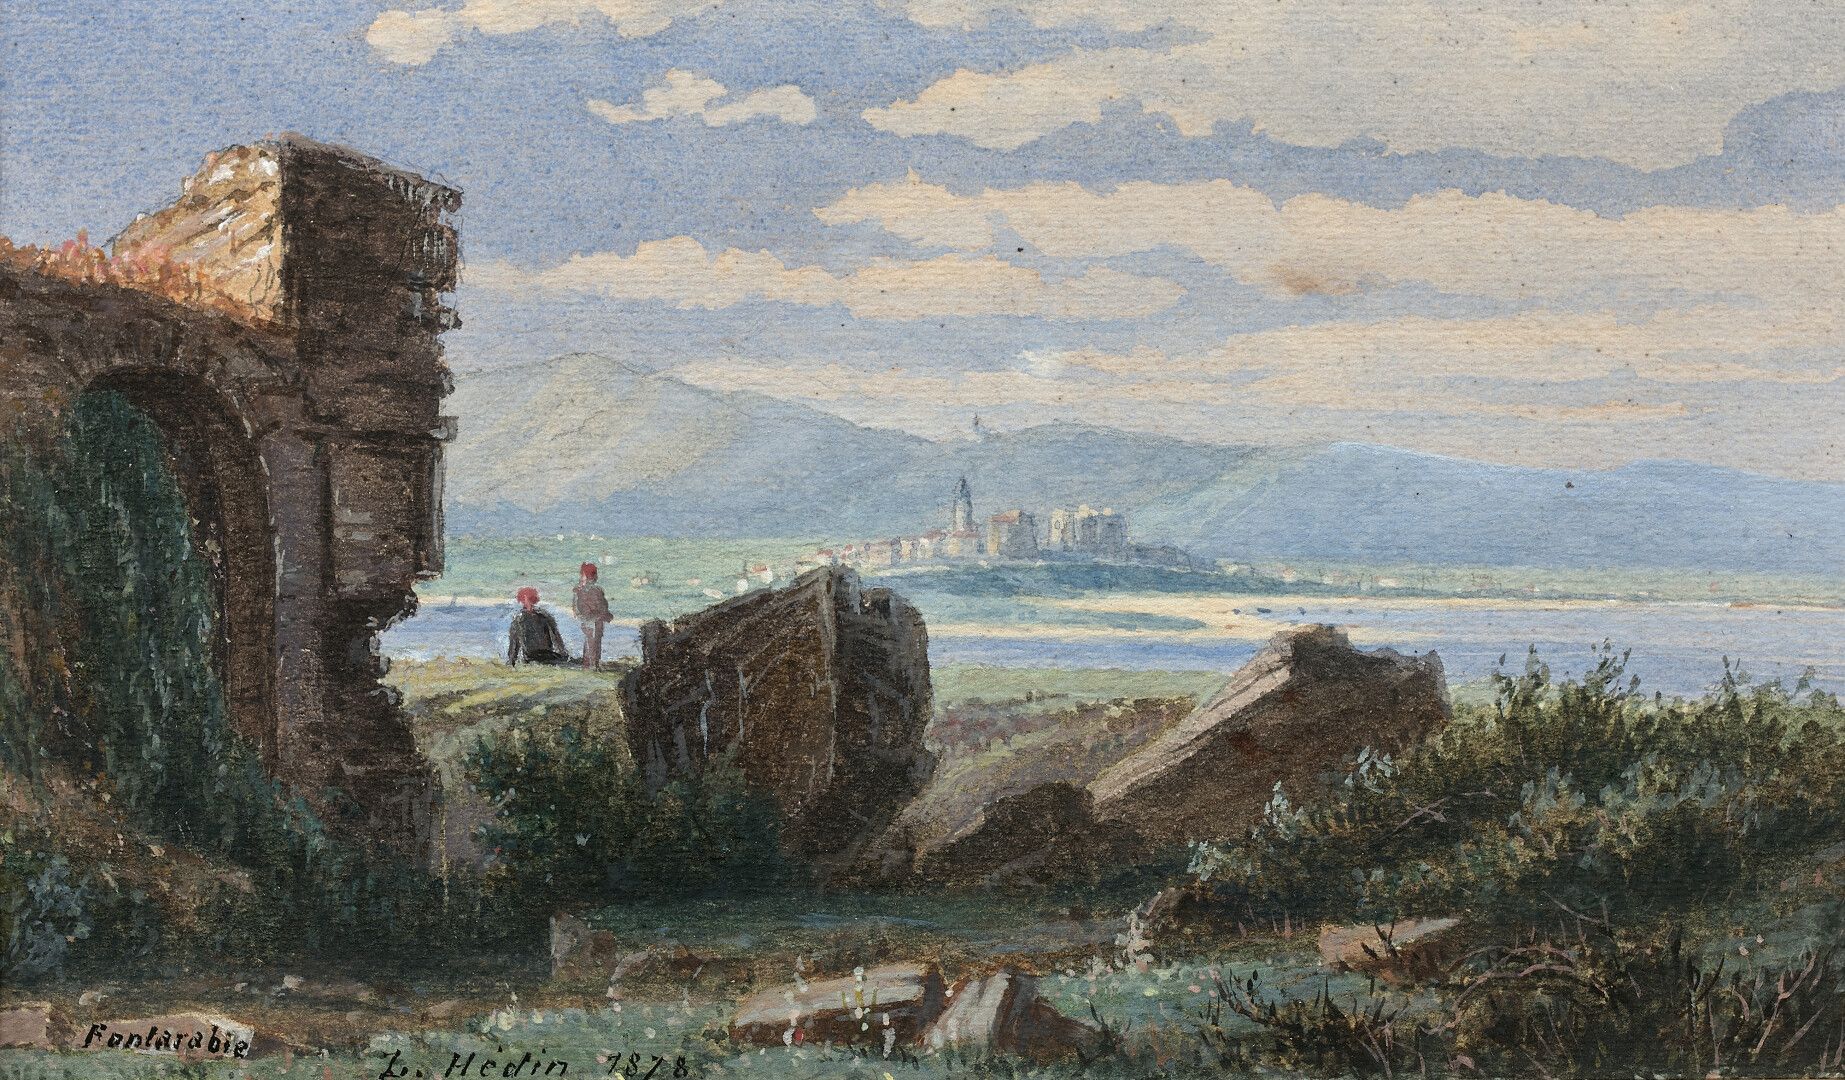 Null Louis HEDIN (1818-1886)

Fontarrabia, vista desde el fuerte de Hendaya, 187&hellip;